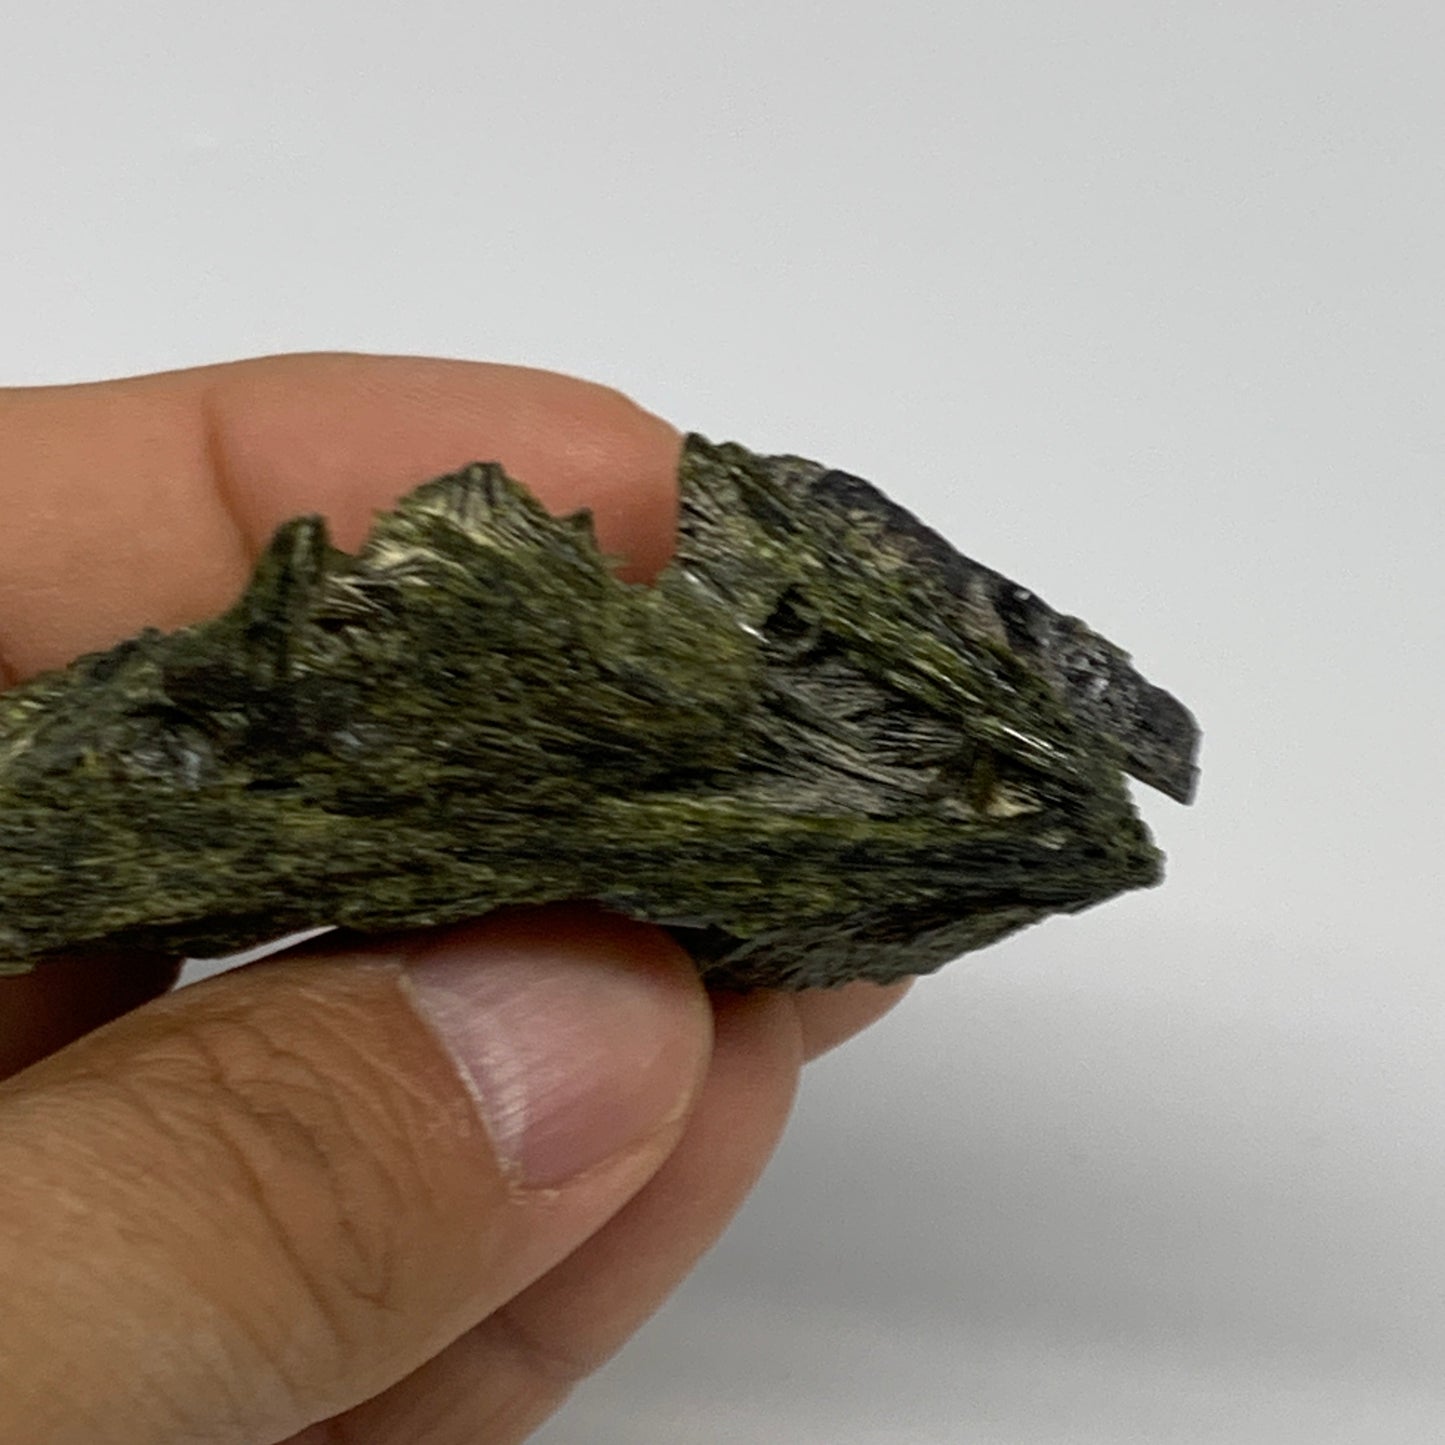 52.1g,2.5"x1.6"x1",Green Epidote Custer/Leaf Mineral Specimen @Pakistan, B27643